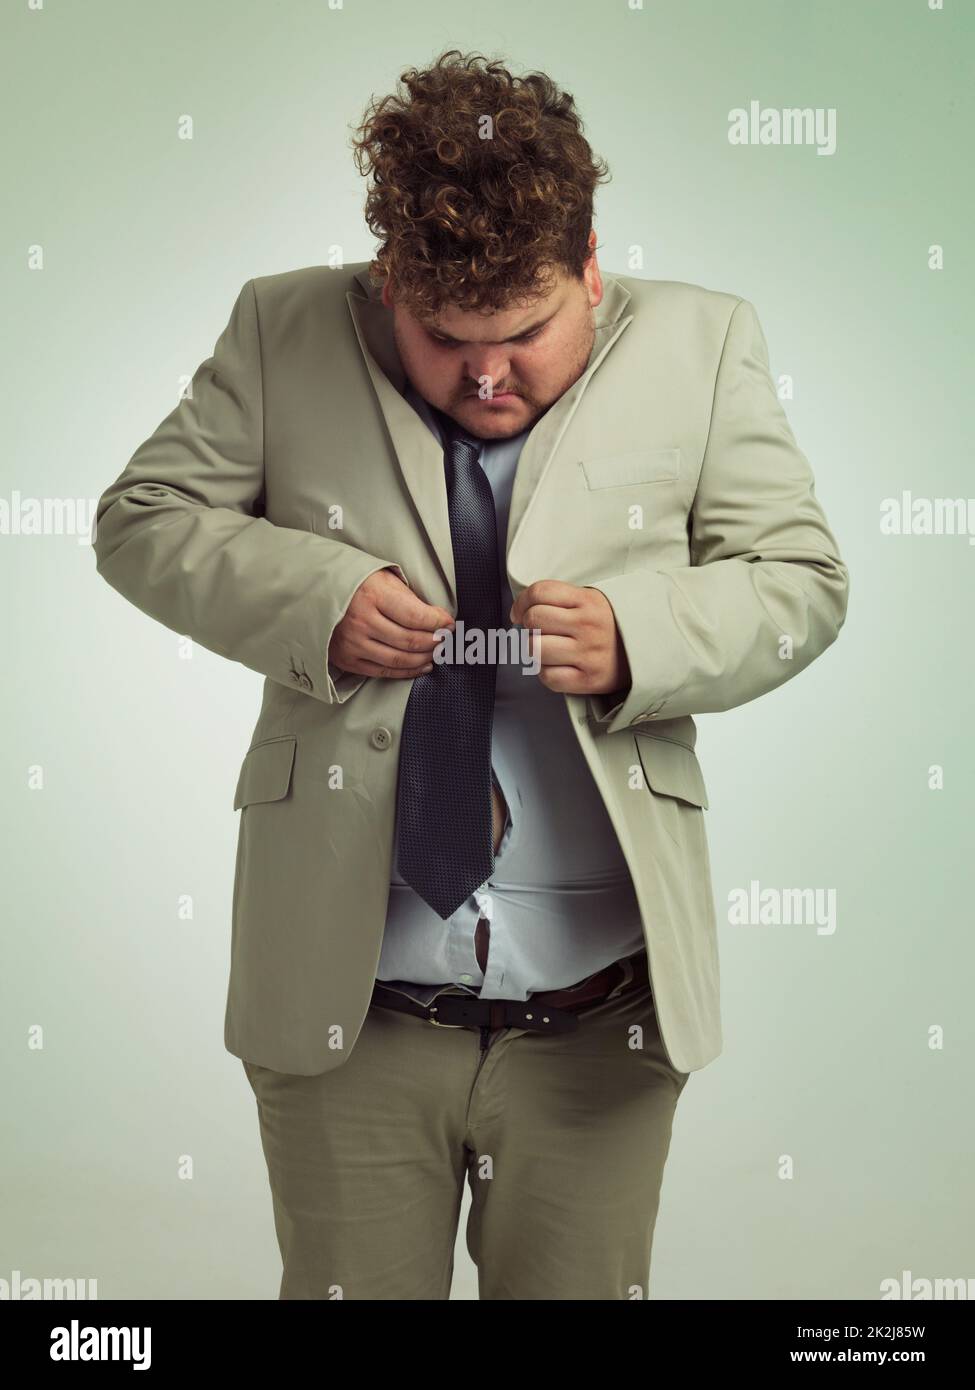 Wie wird das gemacht? Aufnahme eines übergewichtigen Mannes in einem Anzug,  der versucht, seine Jacke zu drücken Stockfotografie - Alamy